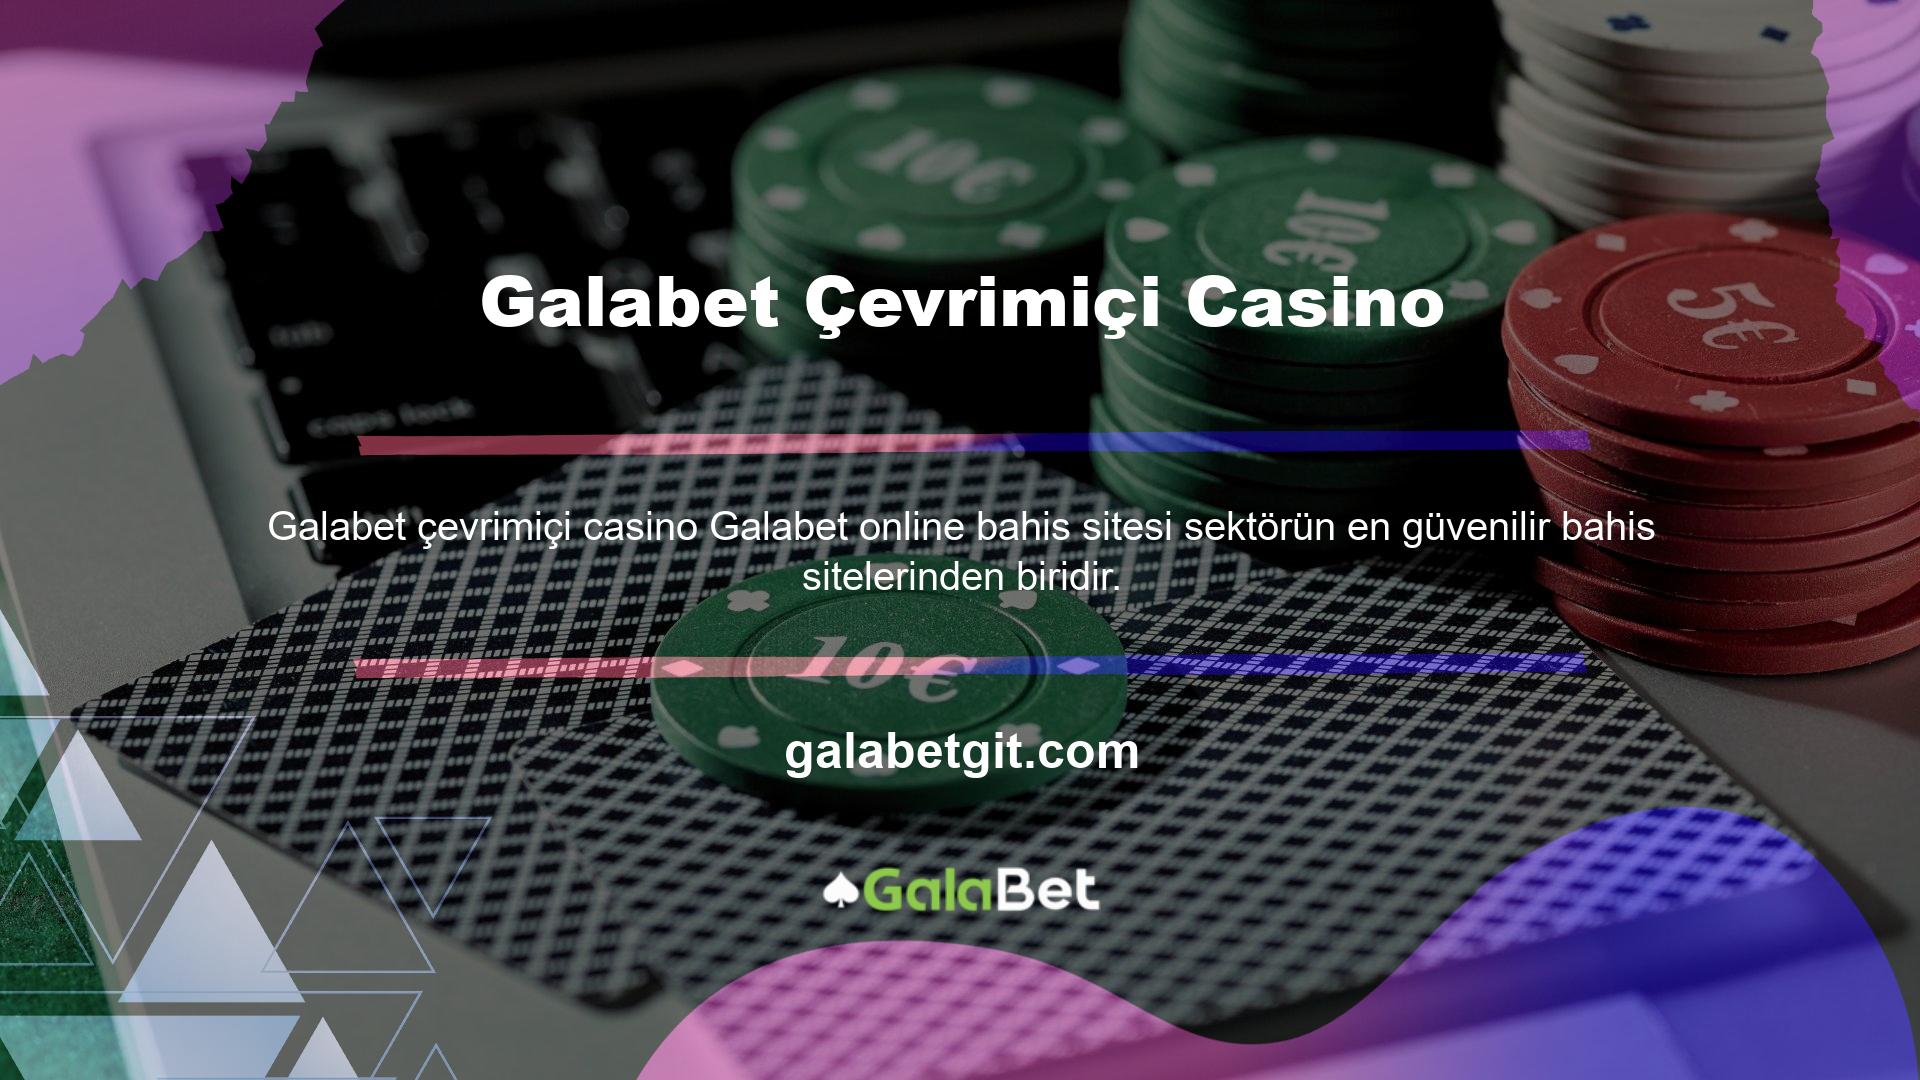 Galabet, kullanıcılarına zarar vermemek için elinden geleni yapıyor ve bunu gerekli casino lisanslarını sağlayarak temel olarak kanıtlıyor